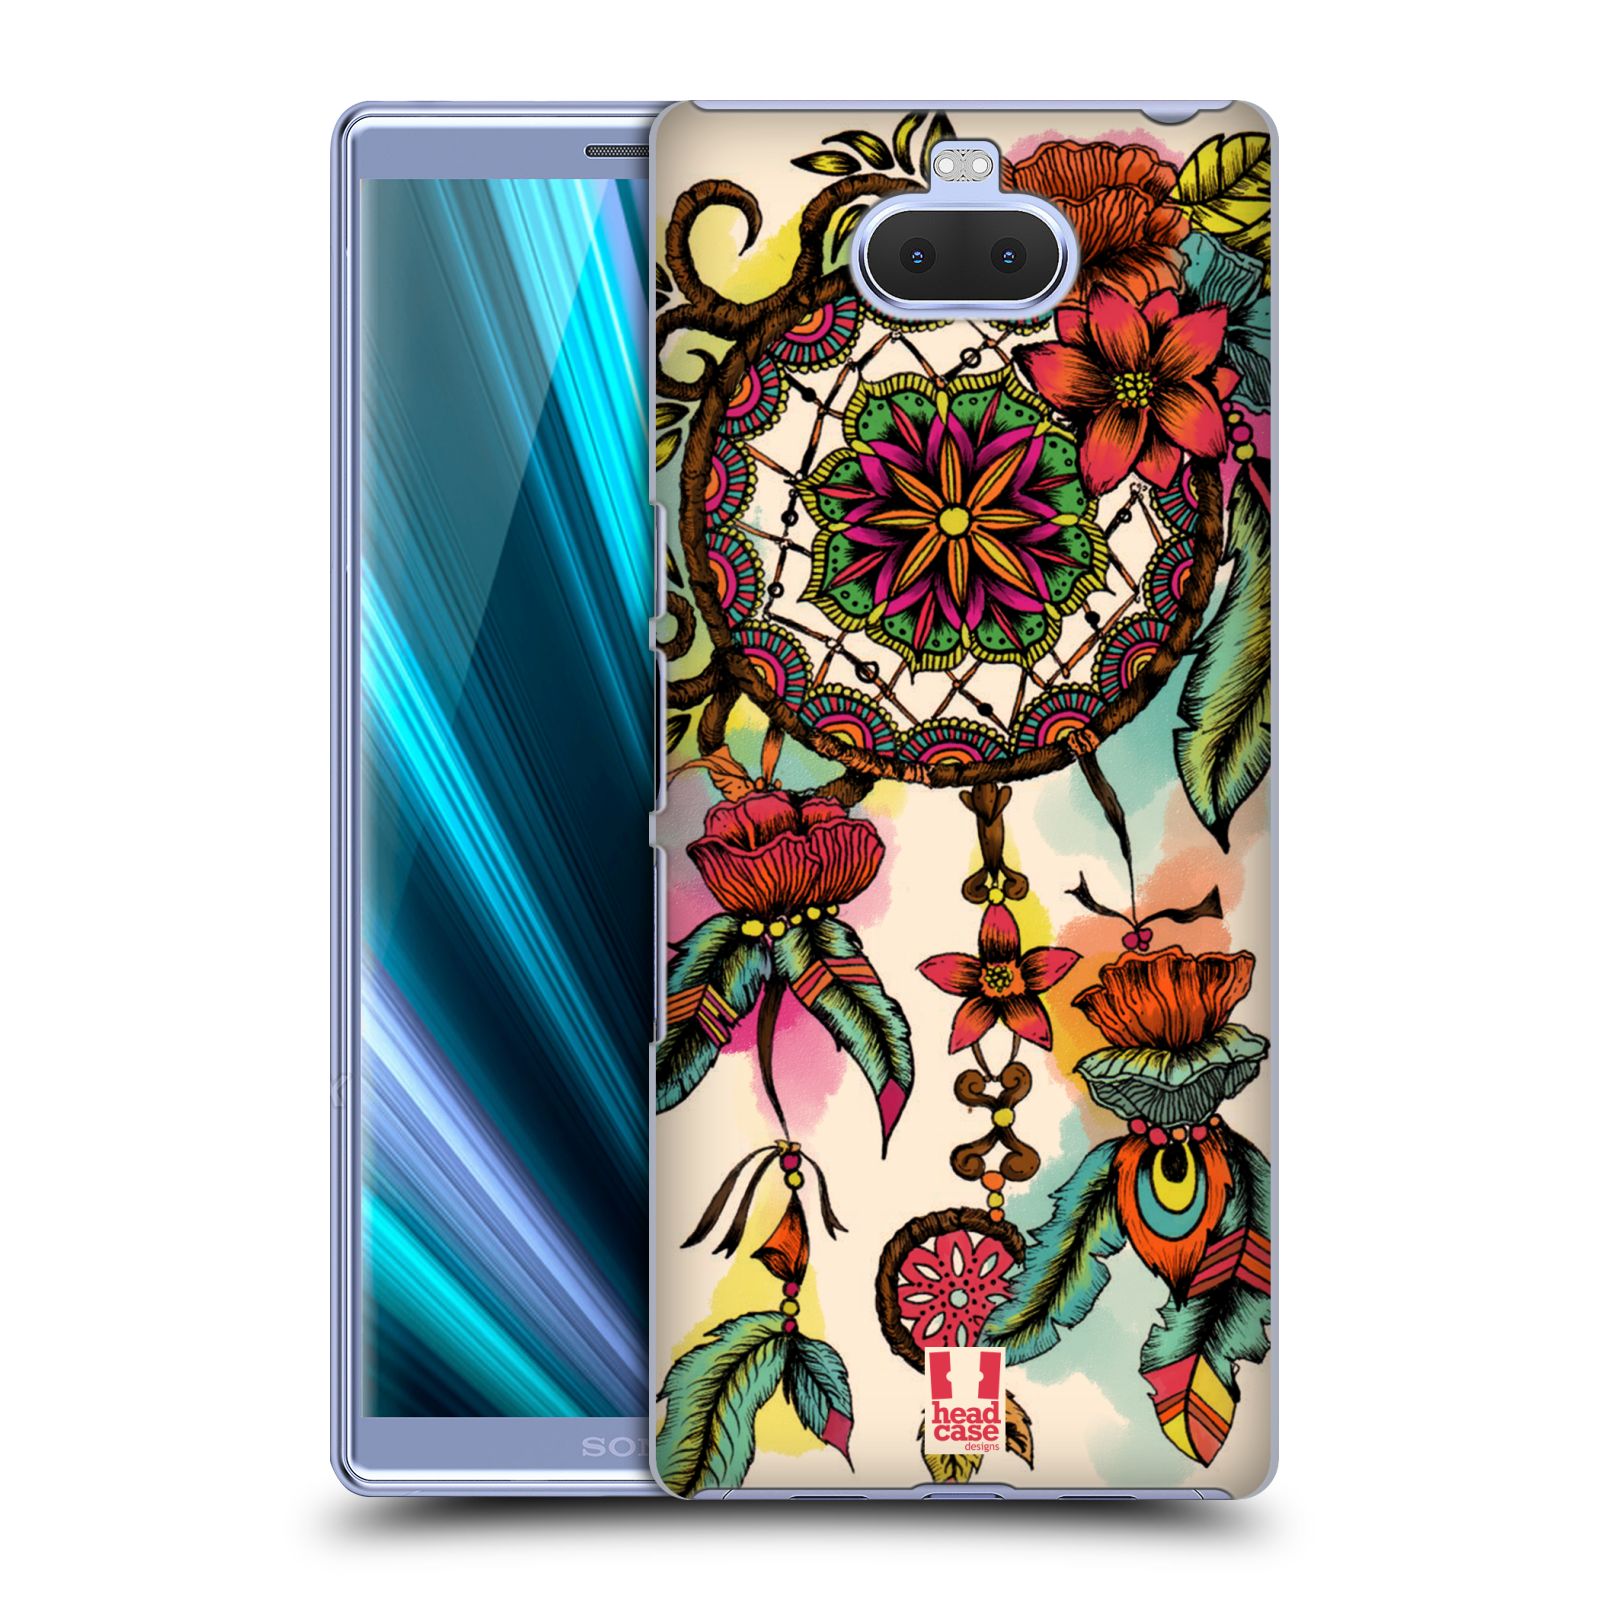 Pouzdro na mobil Sony Xperia 10 - Head Case - vzor Květy lapač snů FLORID